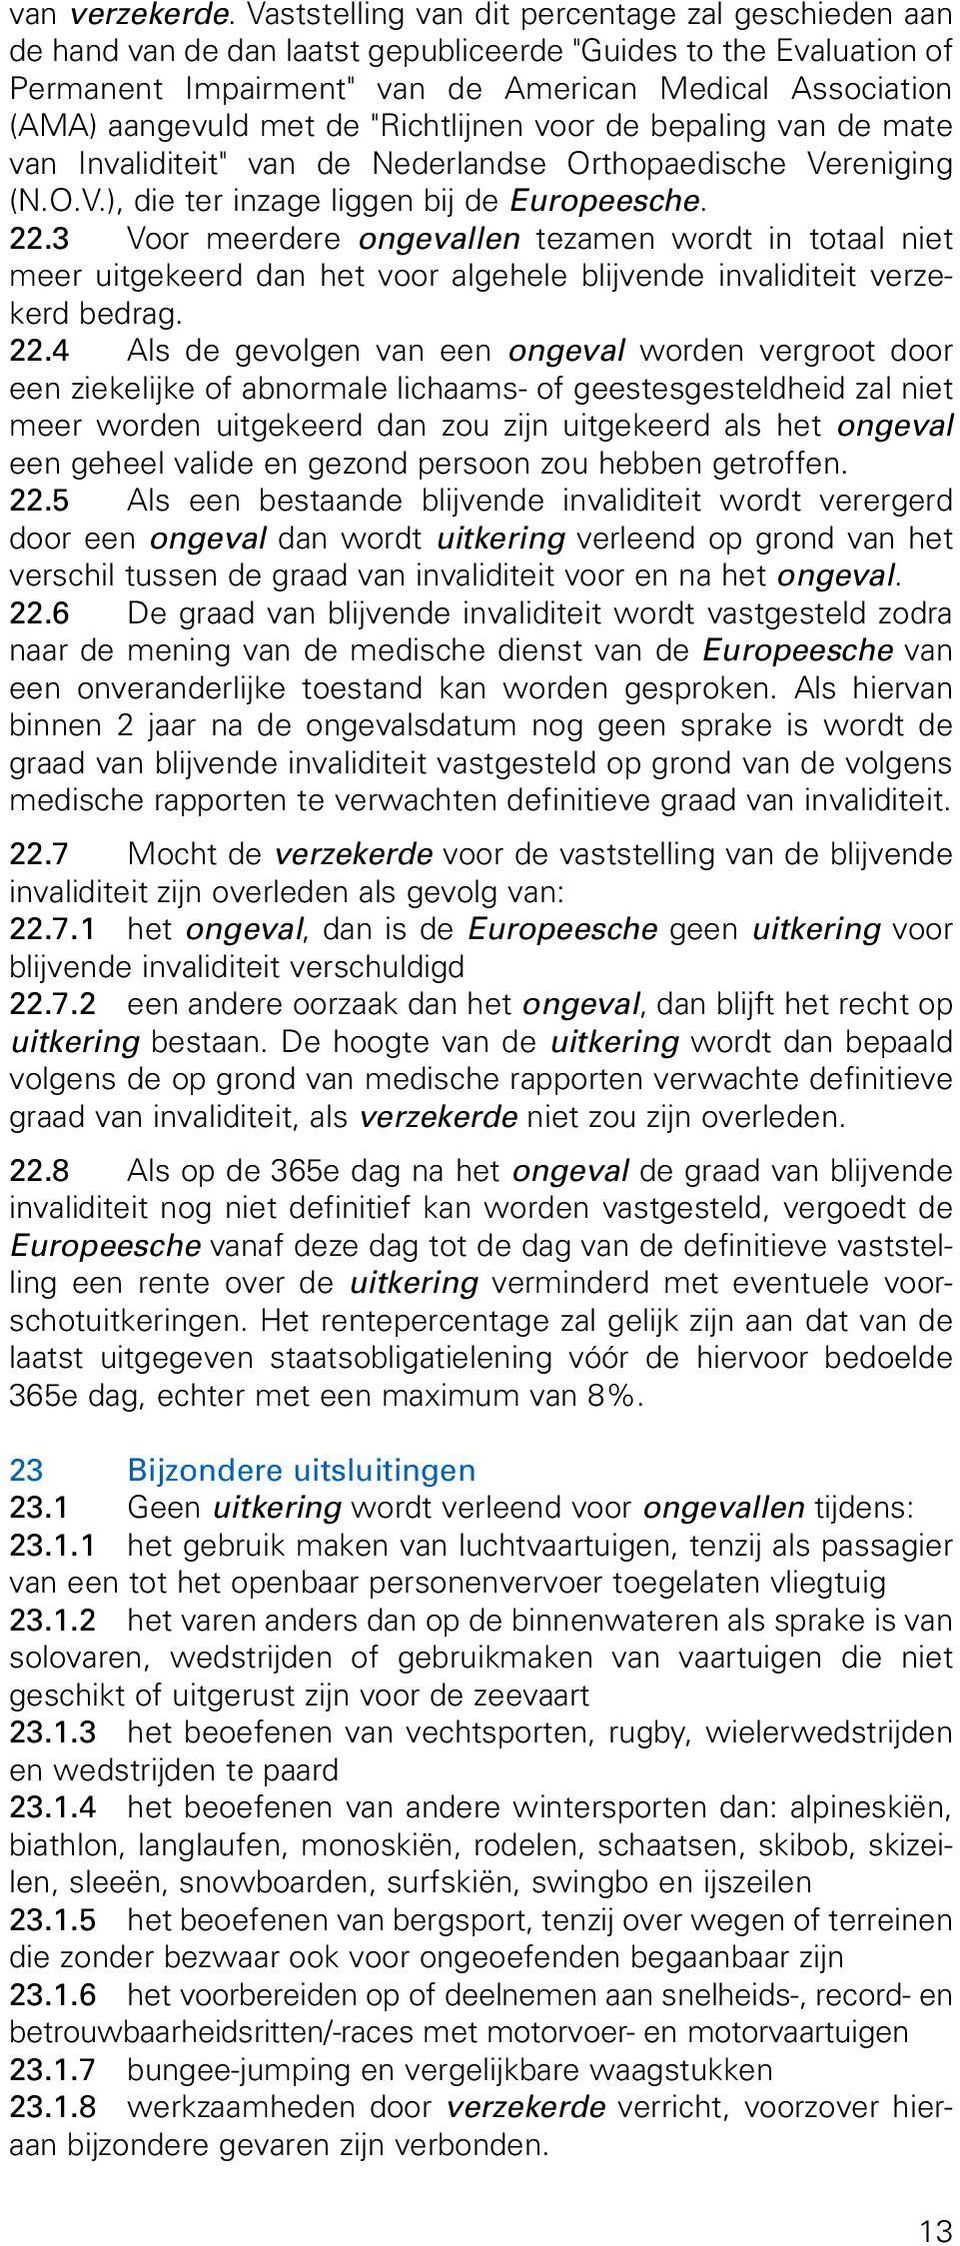 de "Richtlijnen voor de bepaling van de mate van Invaliditeit" van de Nederlandse Orthopaedische Vereniging (N.O.V.), die ter inzage liggen bij de Europeesche. 22.